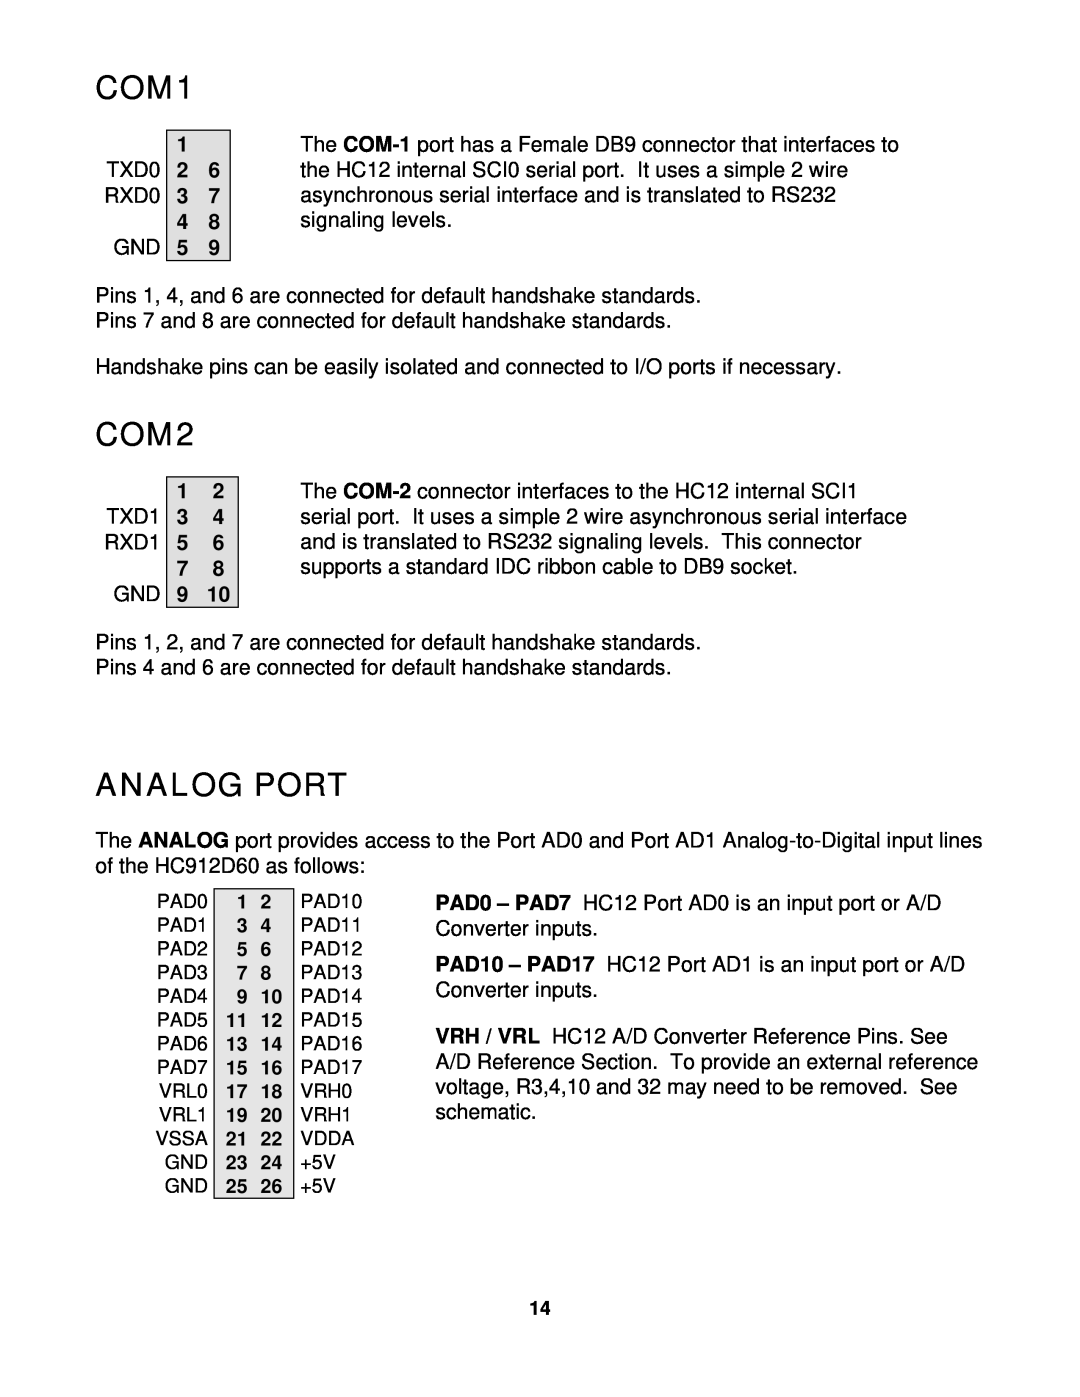 Motorola CME-12D60 manual COM1, COM2, Analog Port 